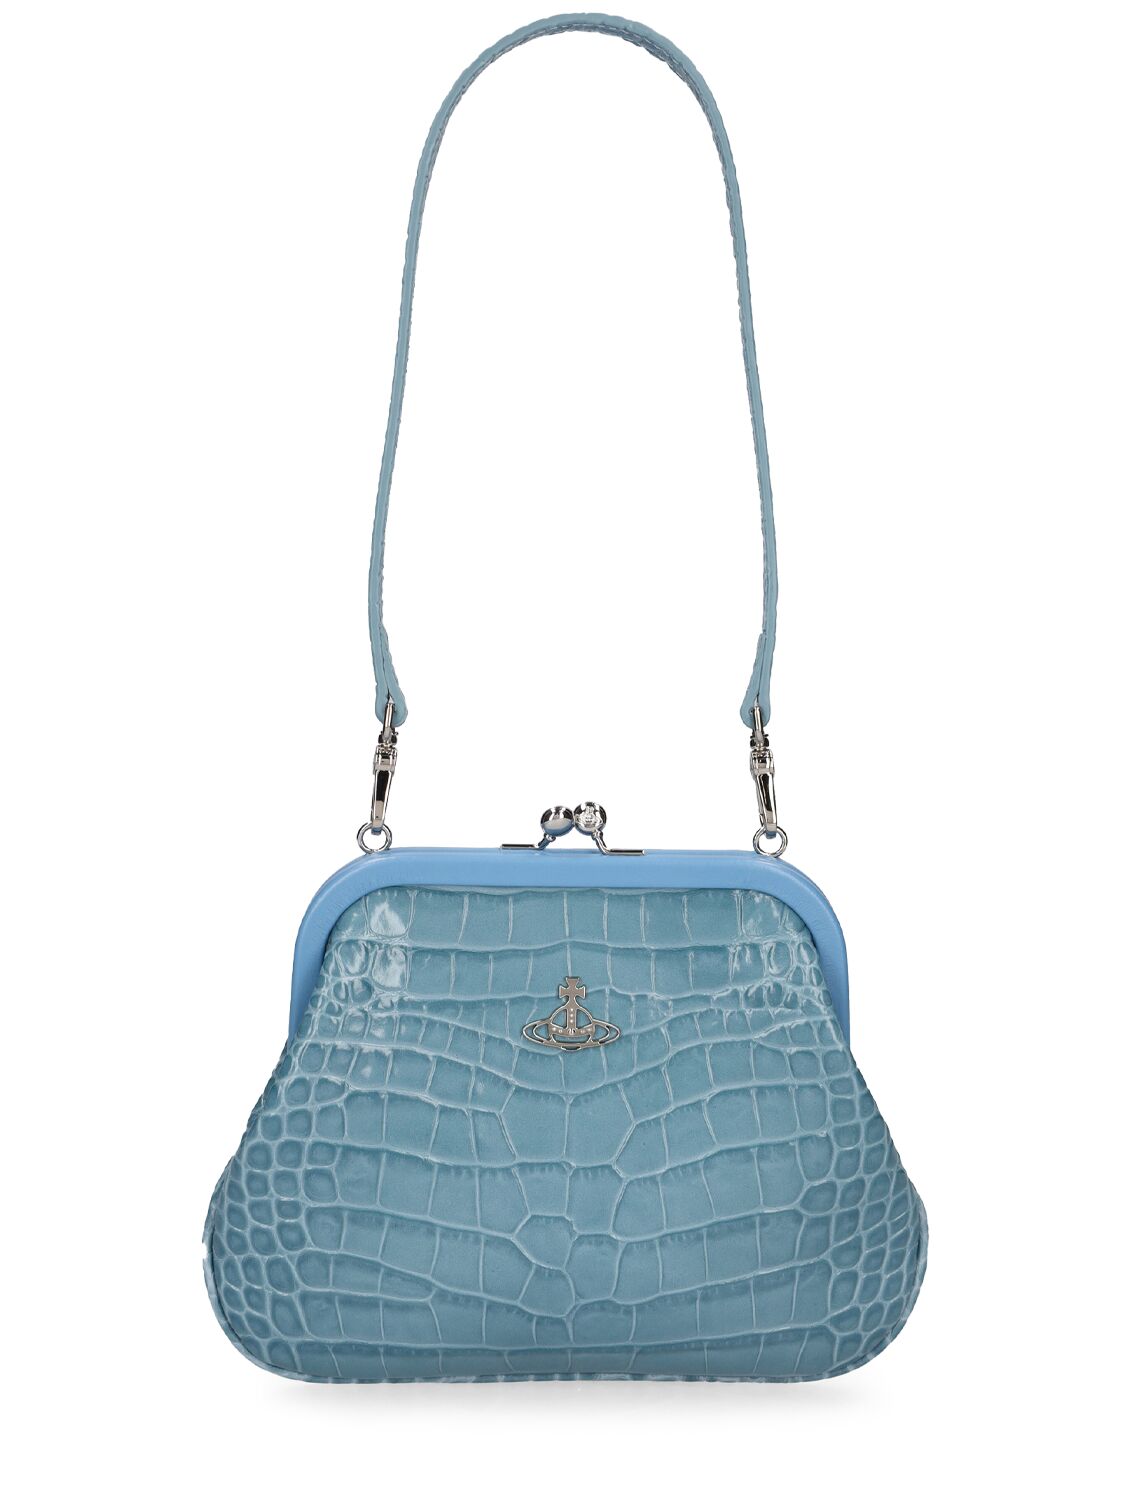 Vivienne Westwood Embellished Leather Tote Bag In Light Blue